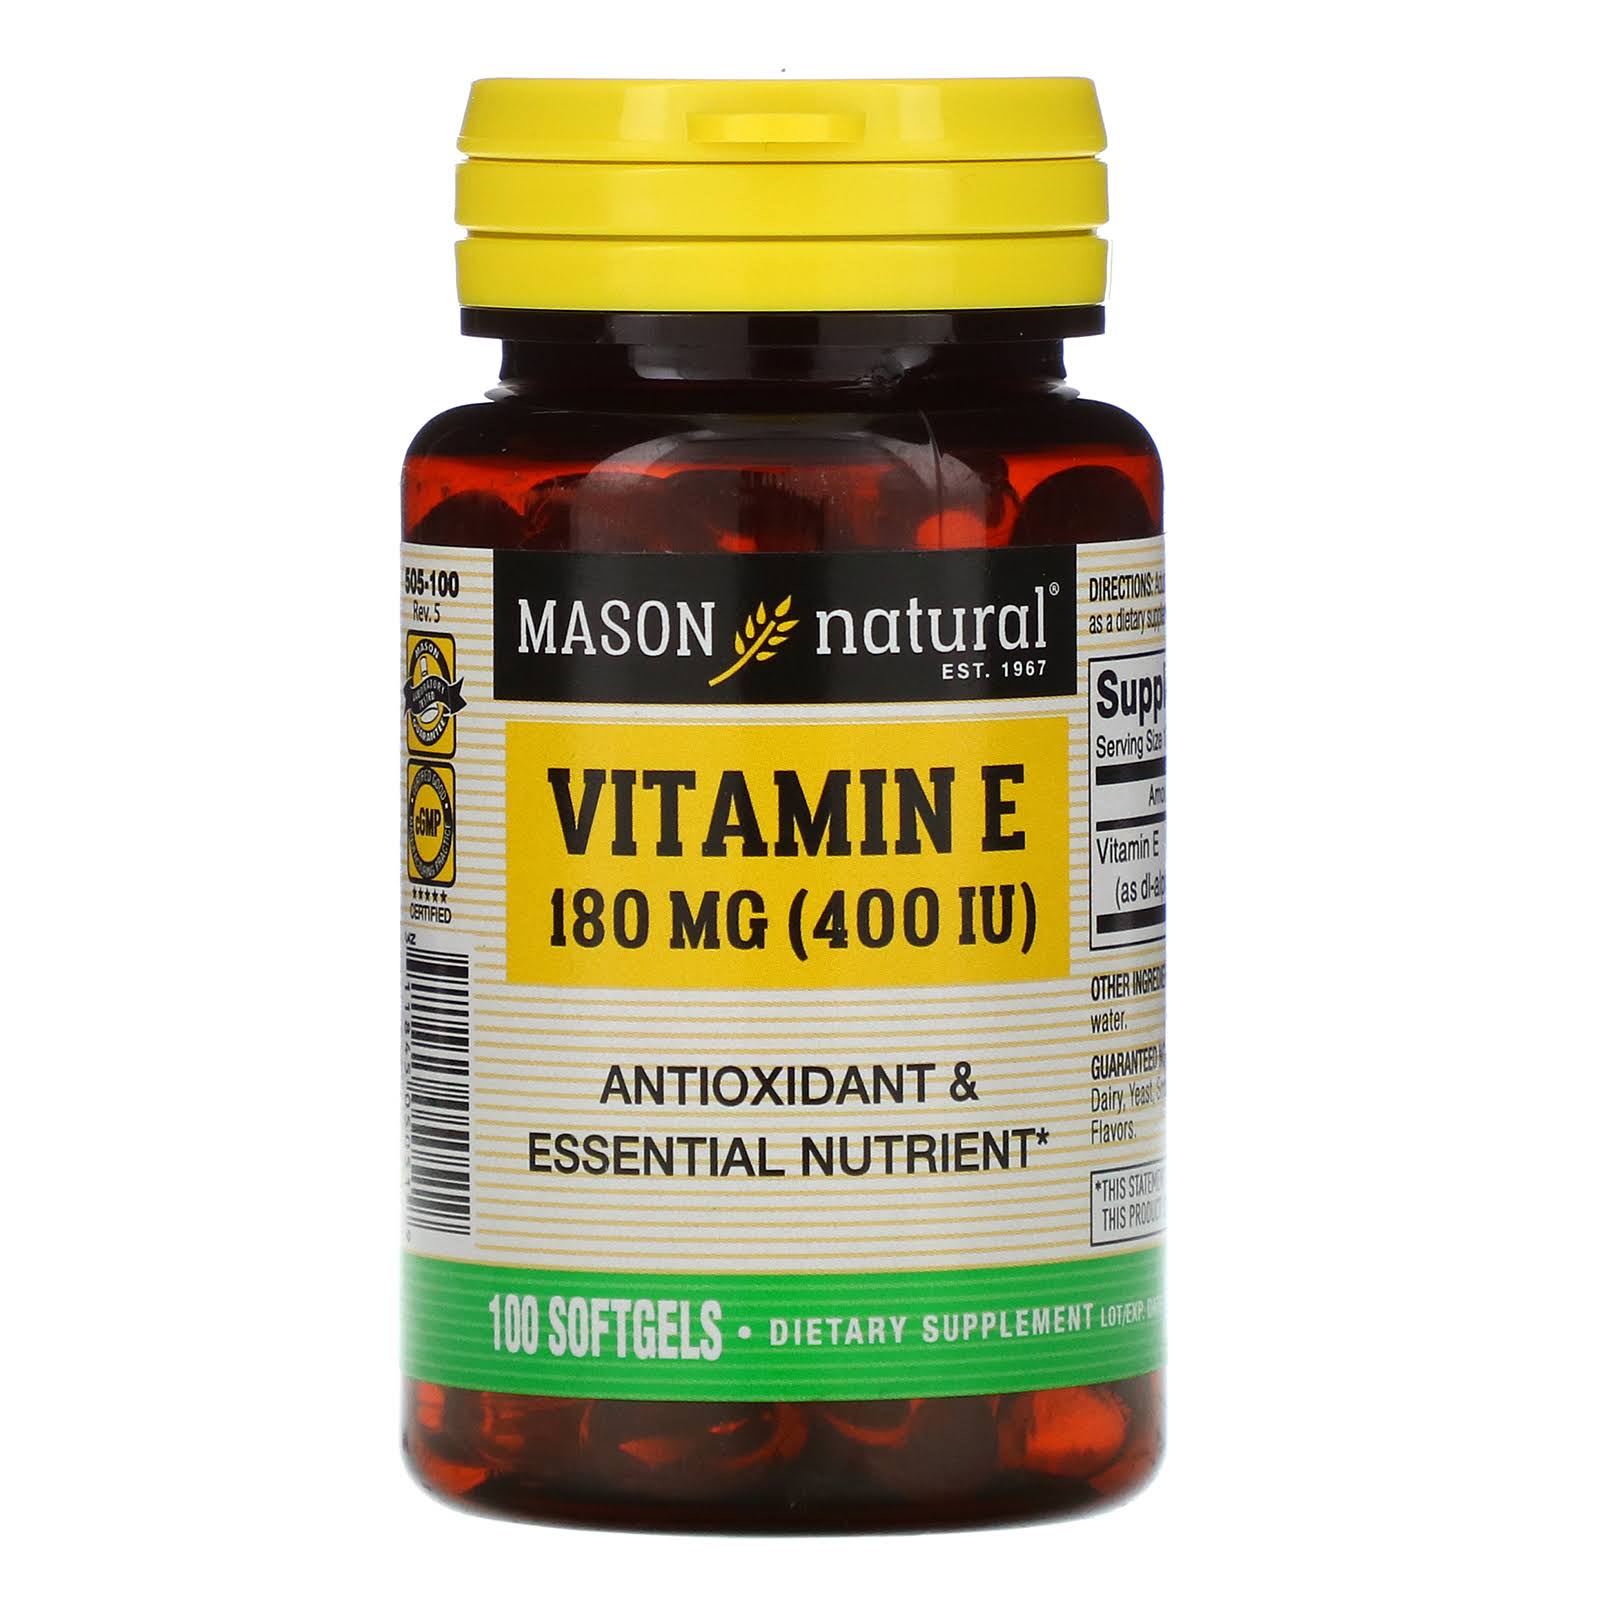 Mason Natural Vitamin E Softgels Best Value, 400 IU